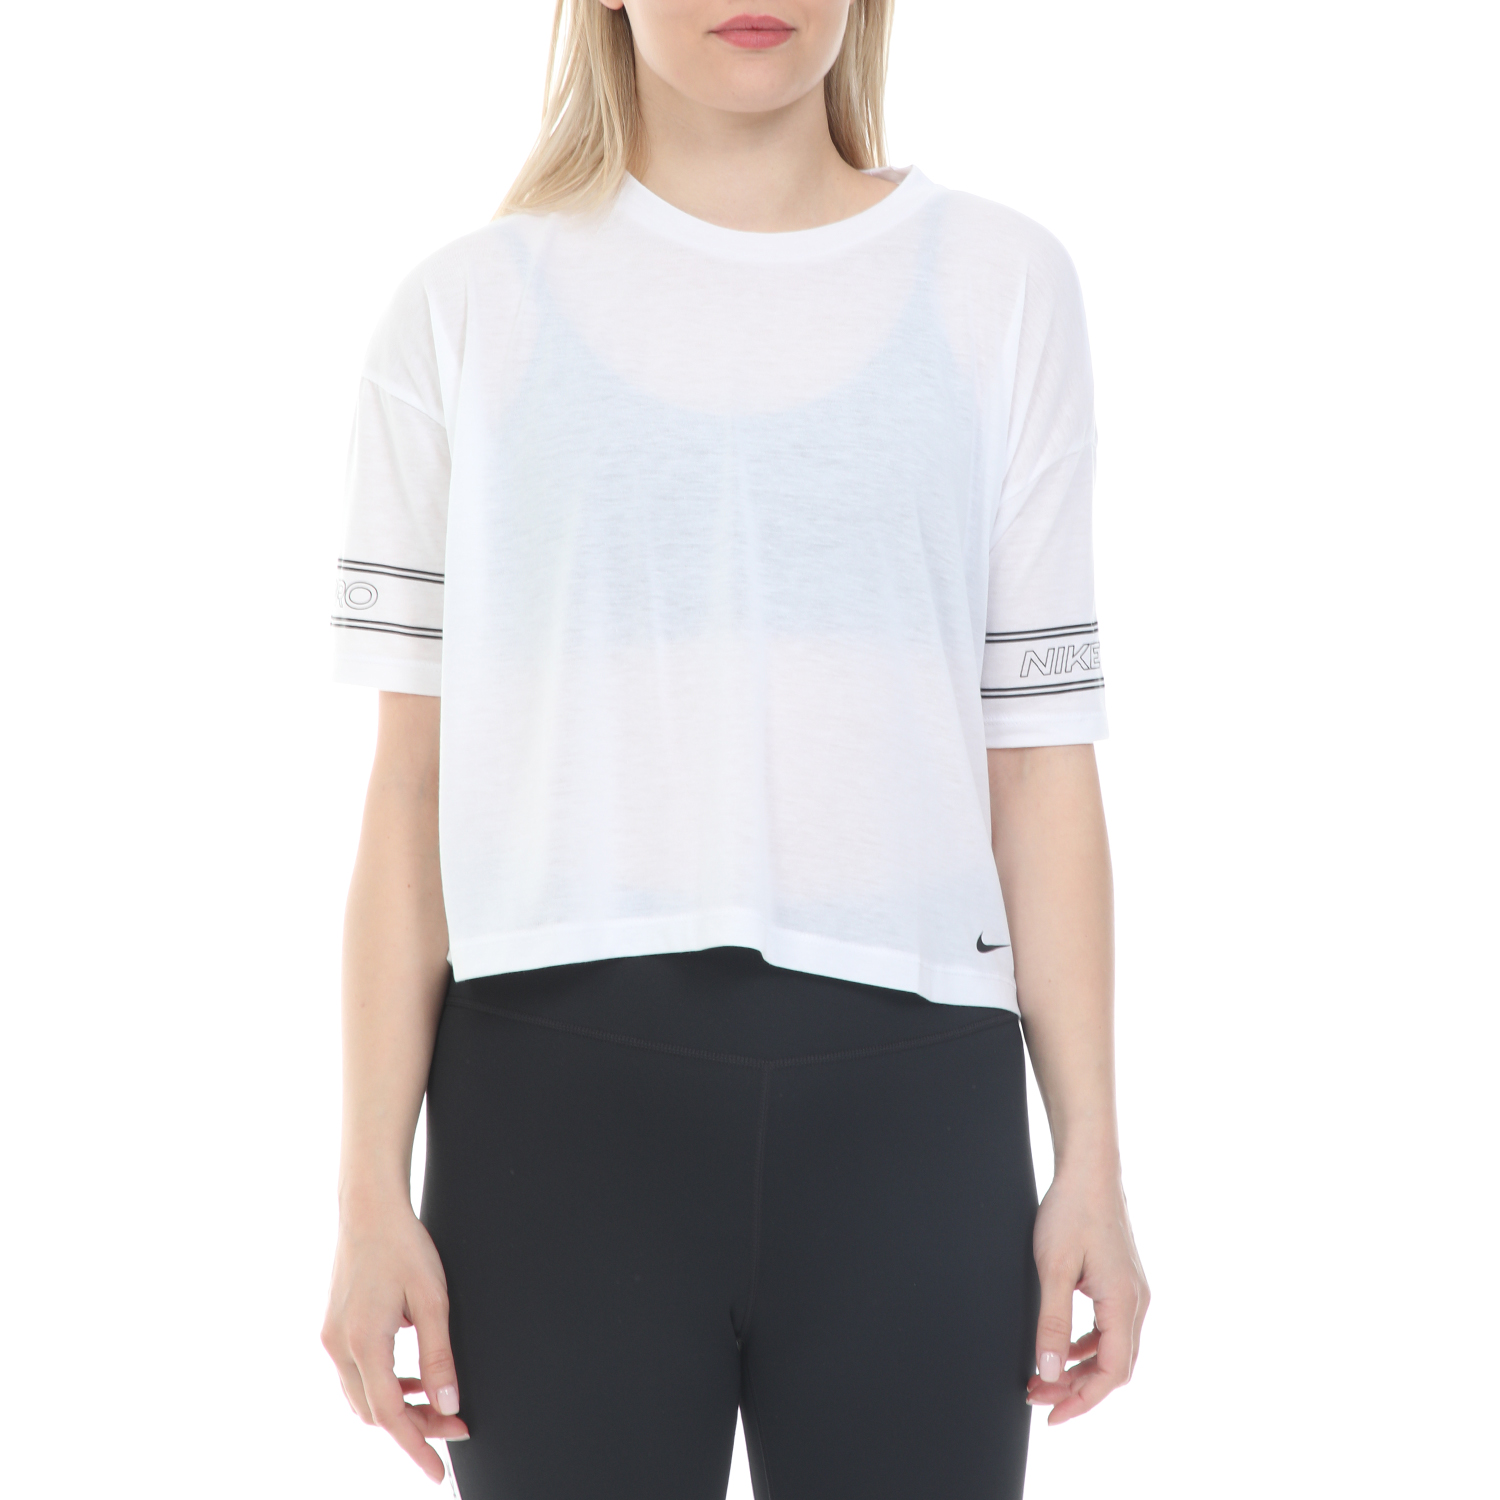 Γυναικεία/Ρούχα/Αθλητικά/T-shirt-Τοπ NIKE - Γυναικεία cropped μπλούζα NIKE NP TOP SS GRX SU20 λευκή